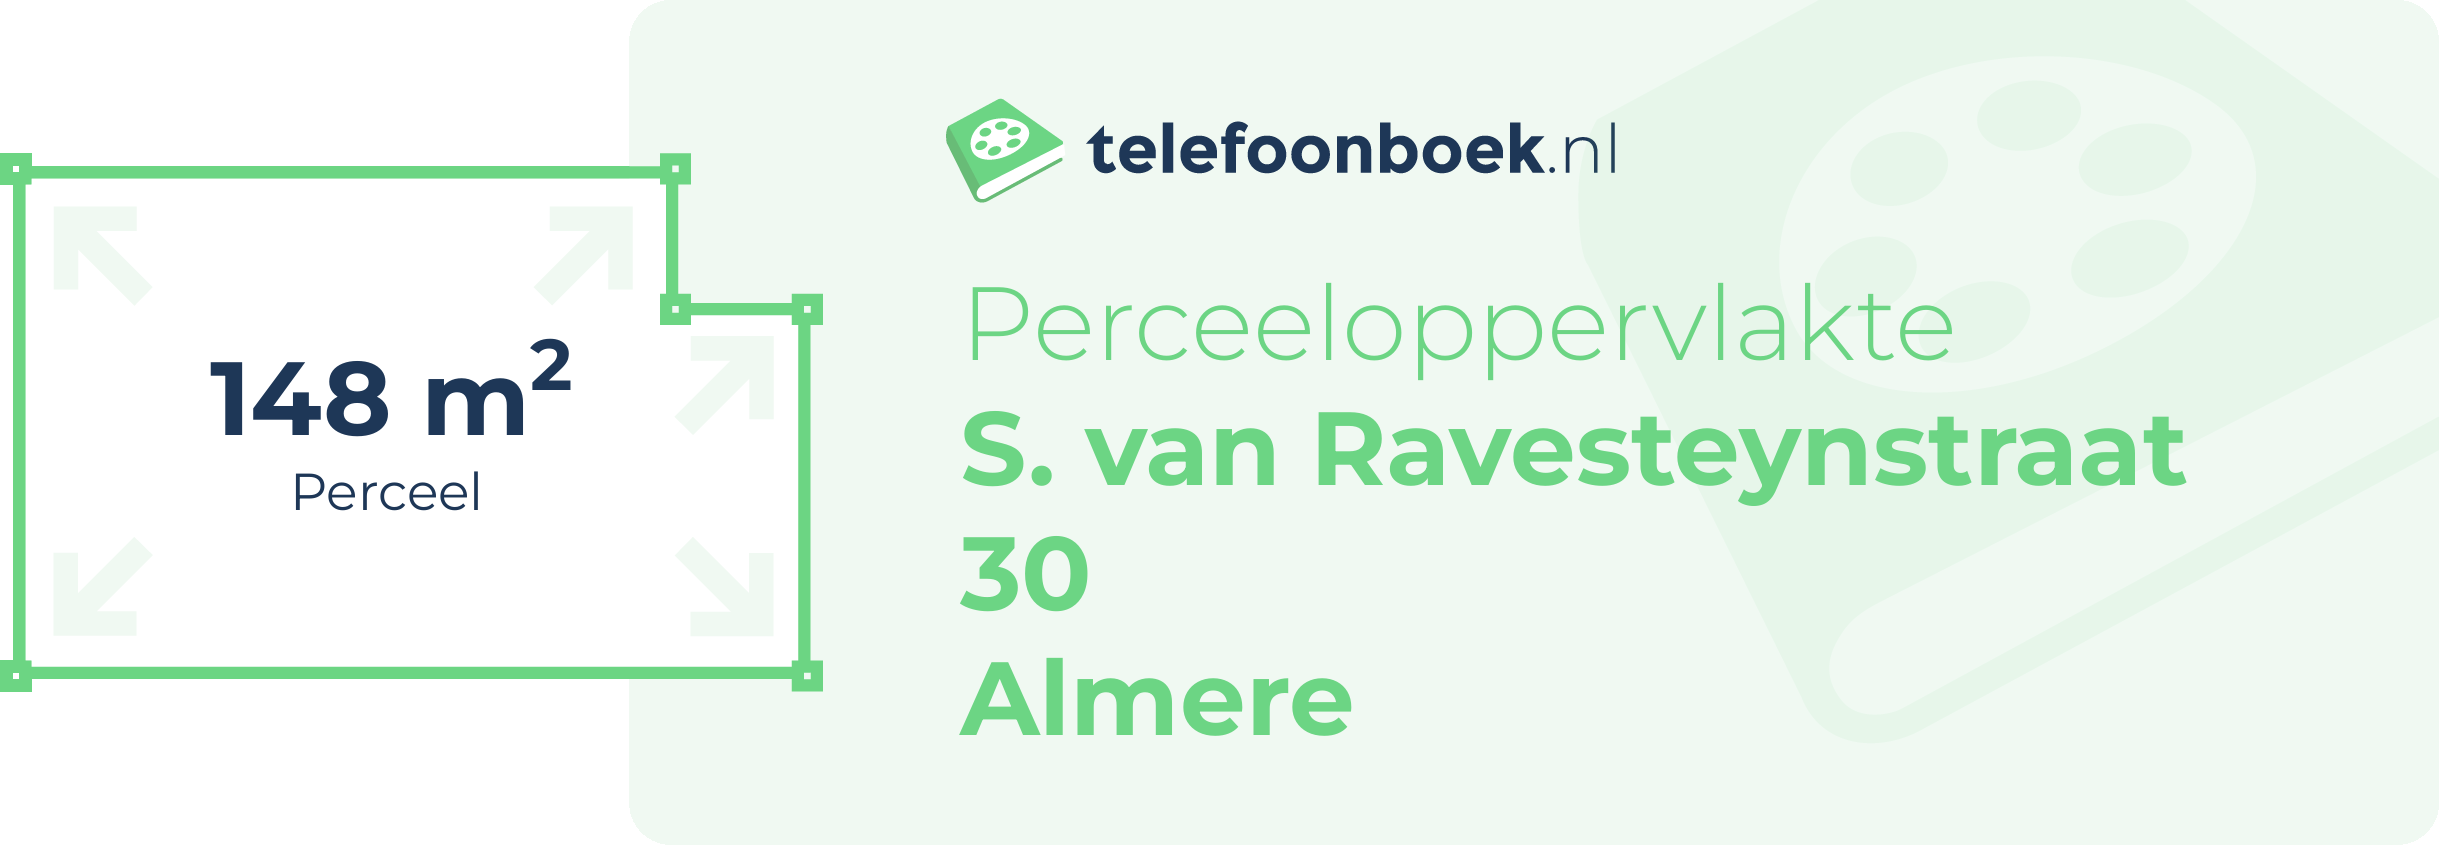 Perceeloppervlakte S. Van Ravesteynstraat 30 Almere